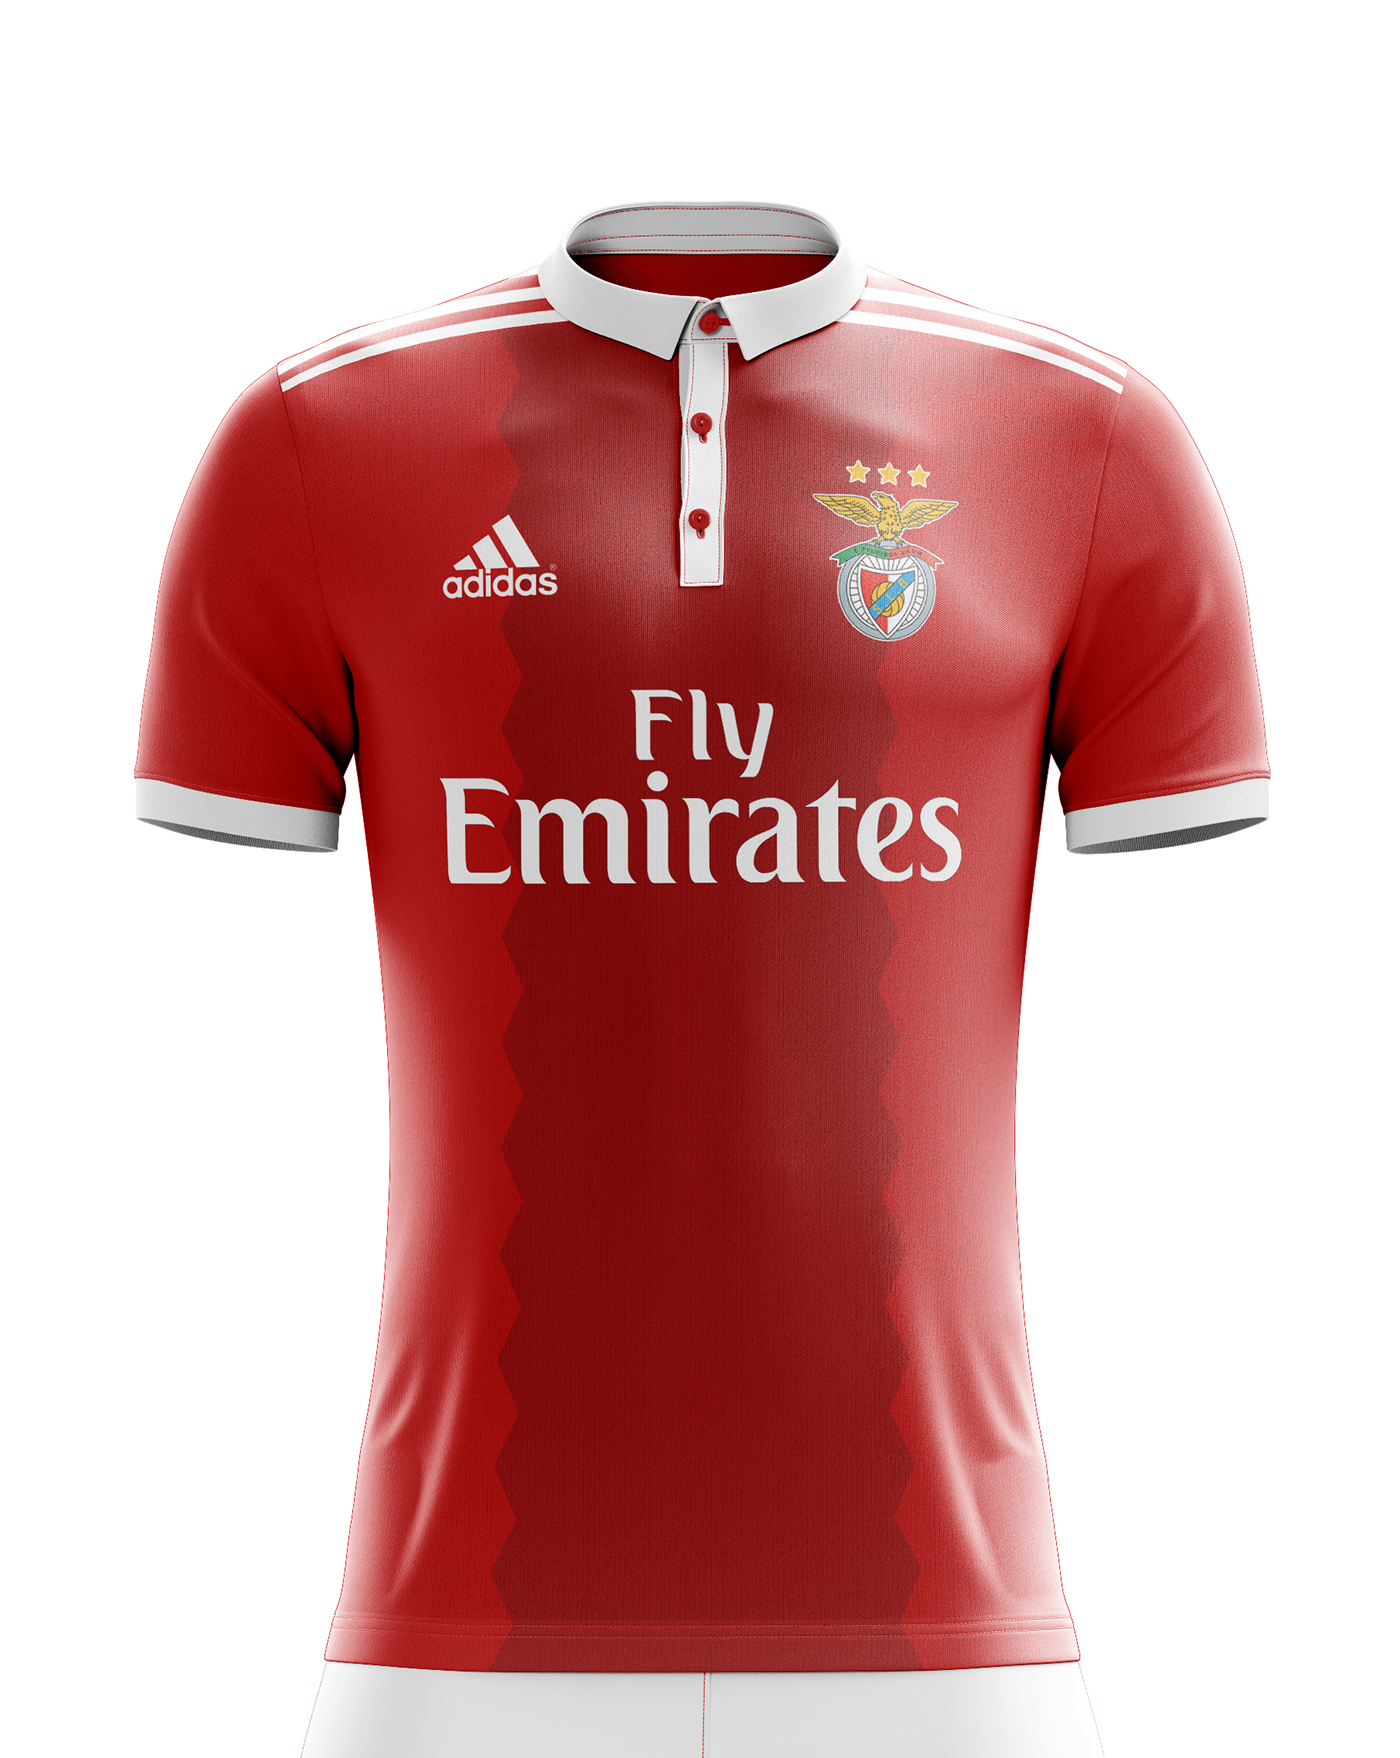 SL Benfica Football Kit 17/18. on Behance